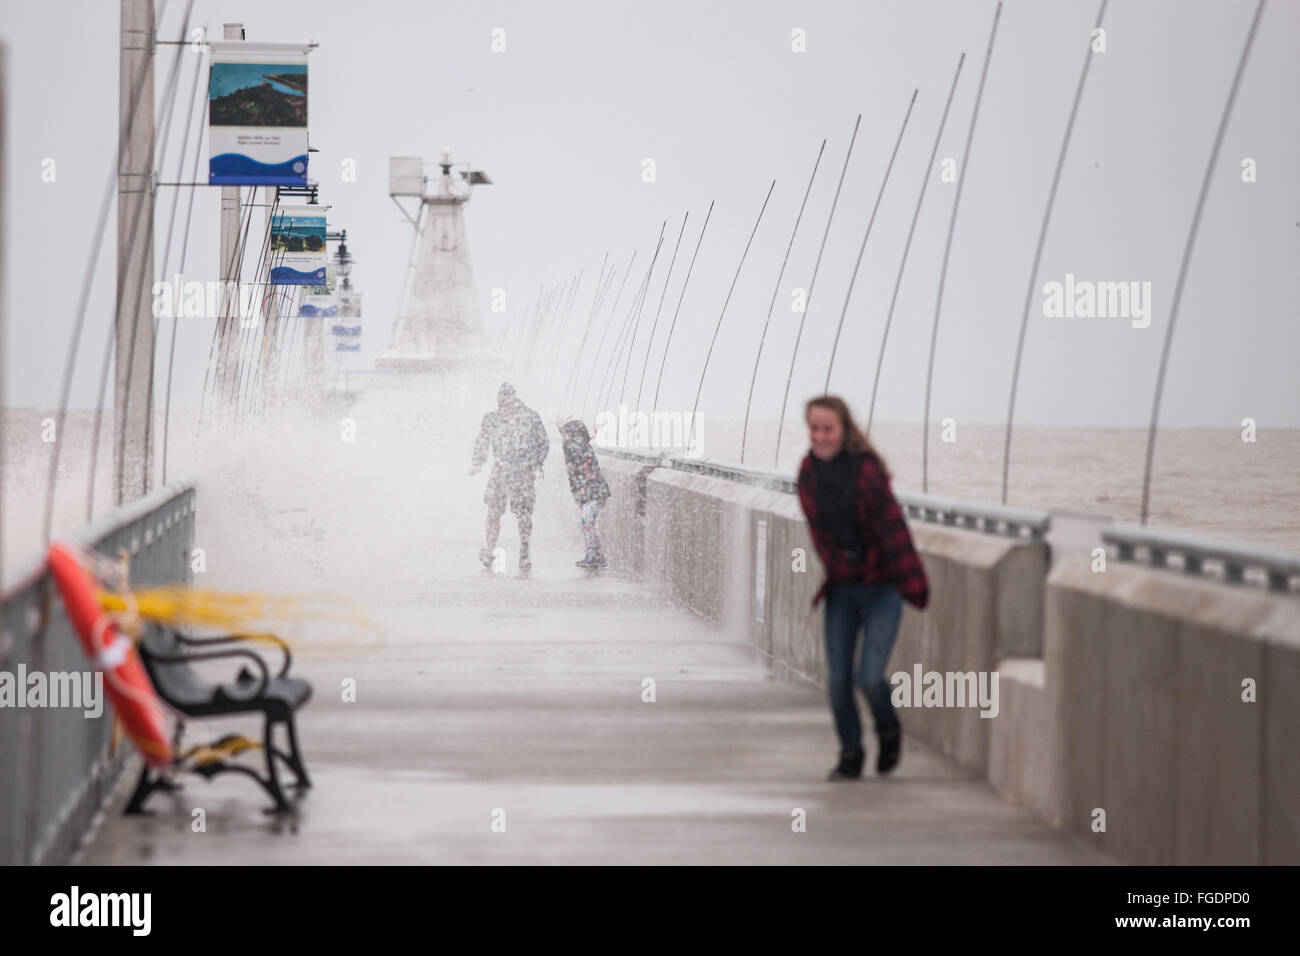 Port Stanley, Kanada - Oktober 3,2015. Wellen Absturz über die öffentlichen Pier in Port Stanley, wie eine Familie versucht, trocken zu bleiben. Stockfoto